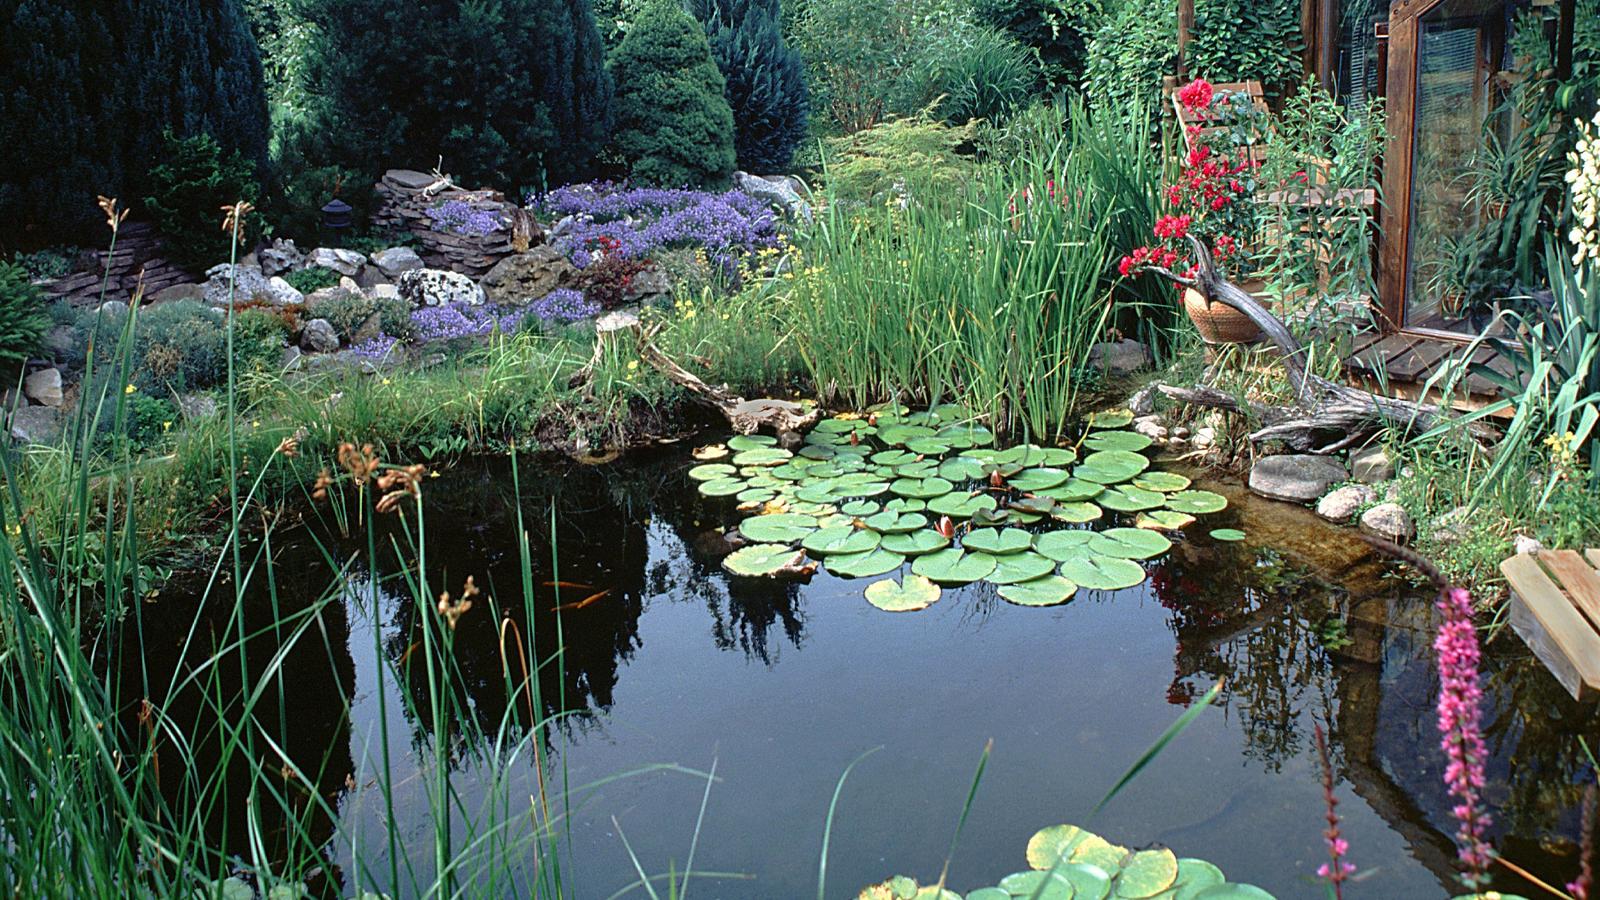 Gartenteich mit Wintergarten. | garden pond with winter garden. | Verwendung weltweit